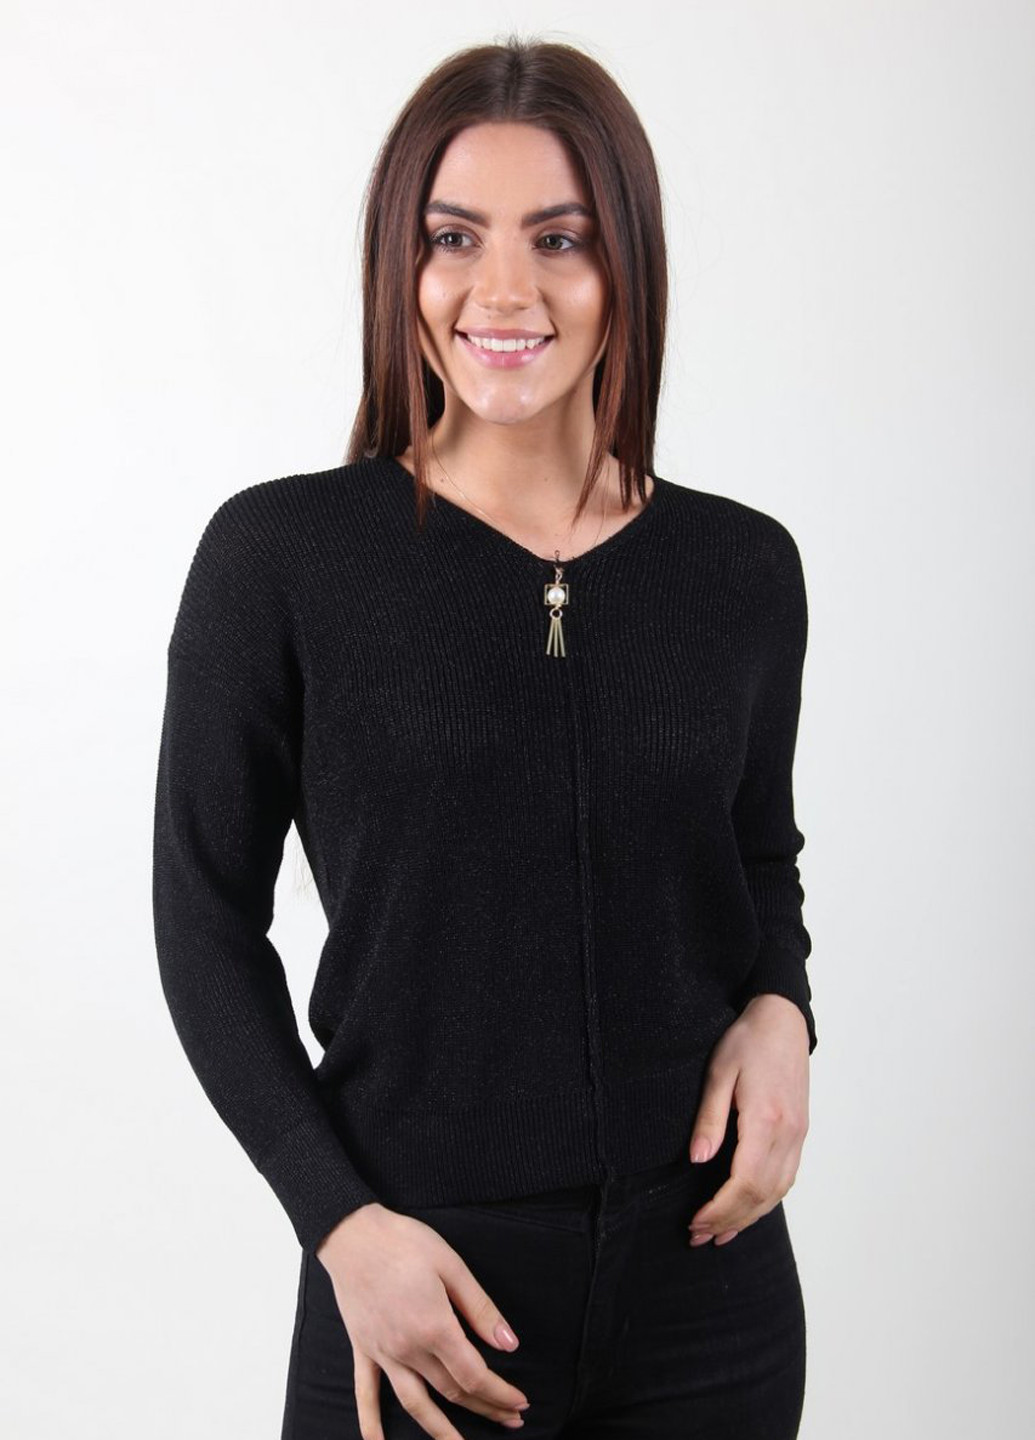 Чорний демісезонний пуловер пуловер LadiesFashion